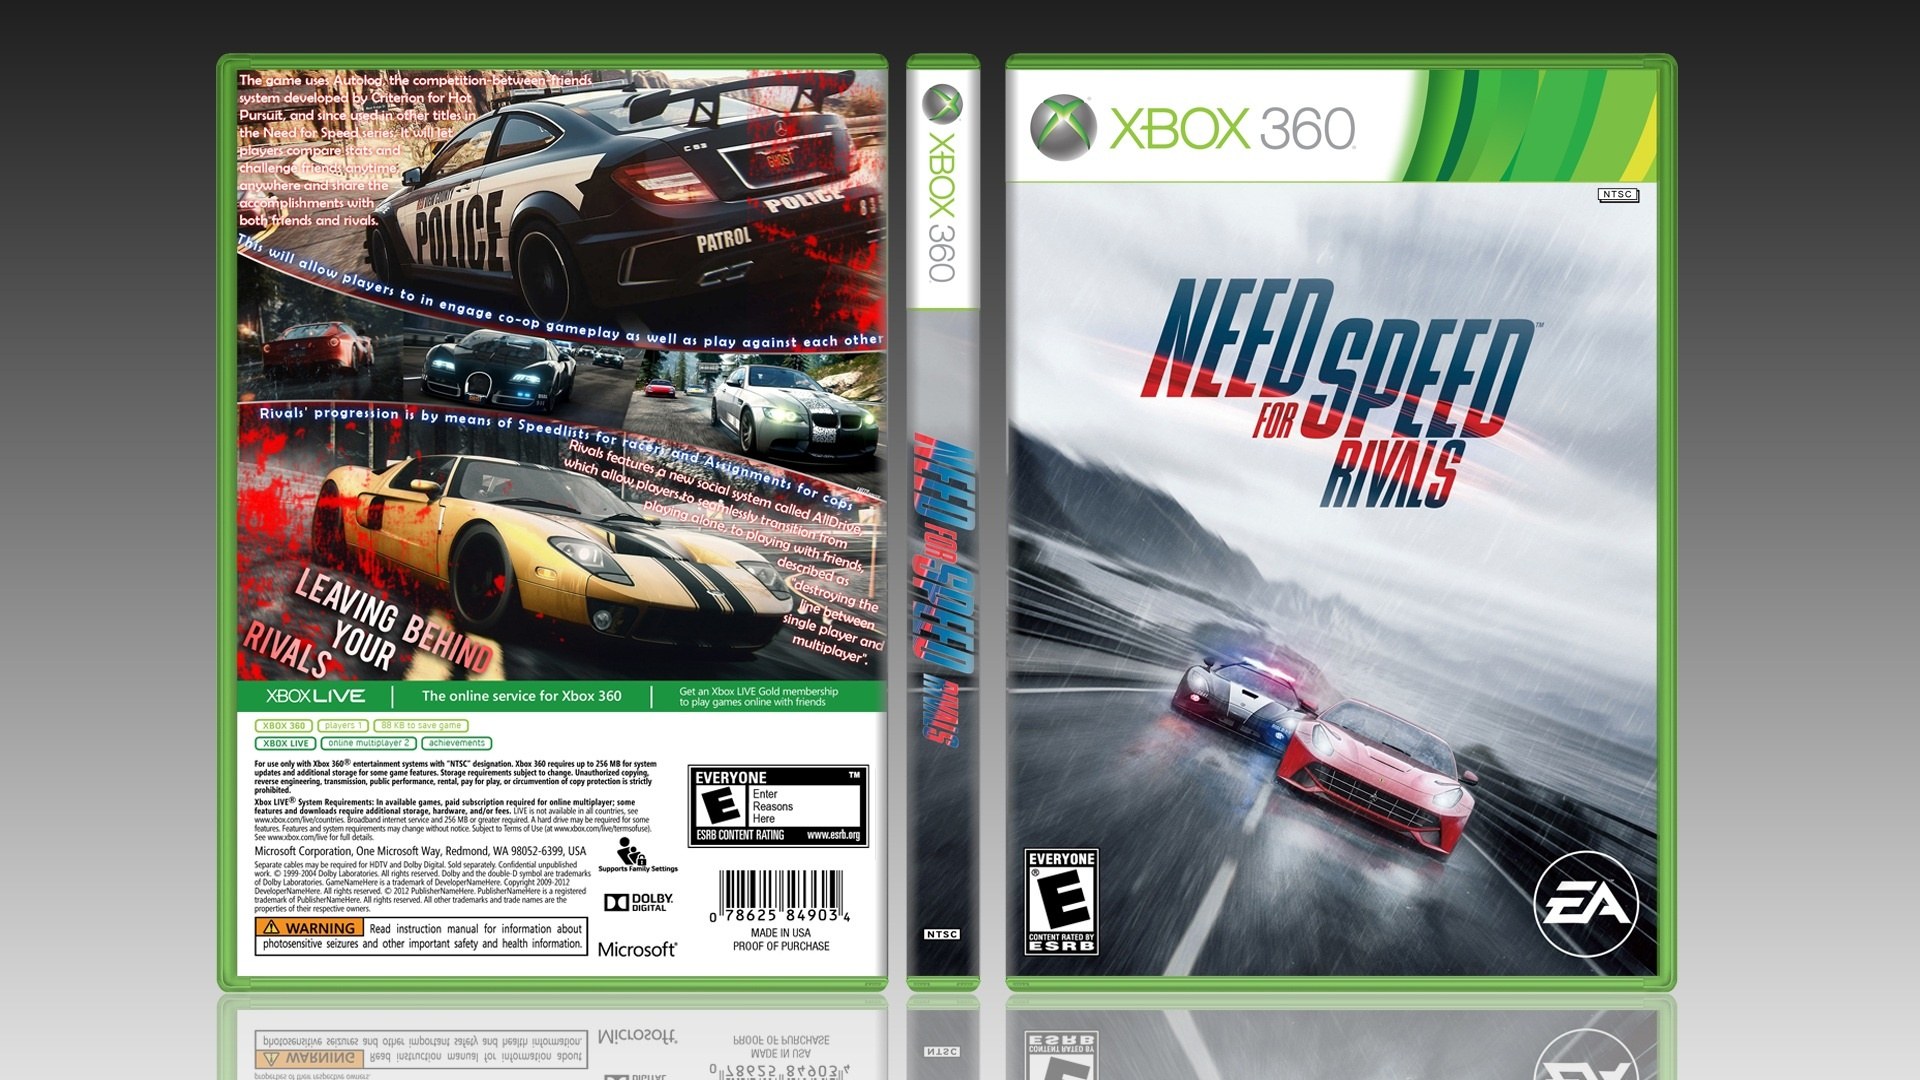 Хбокс 360 на двоих. Need for Speed Xbox 360 диск. Приставка игровая Xbox 360 need for Speed. Need for Speed Rivals Xbox 360. Xbox 360 need for Speed коробка.